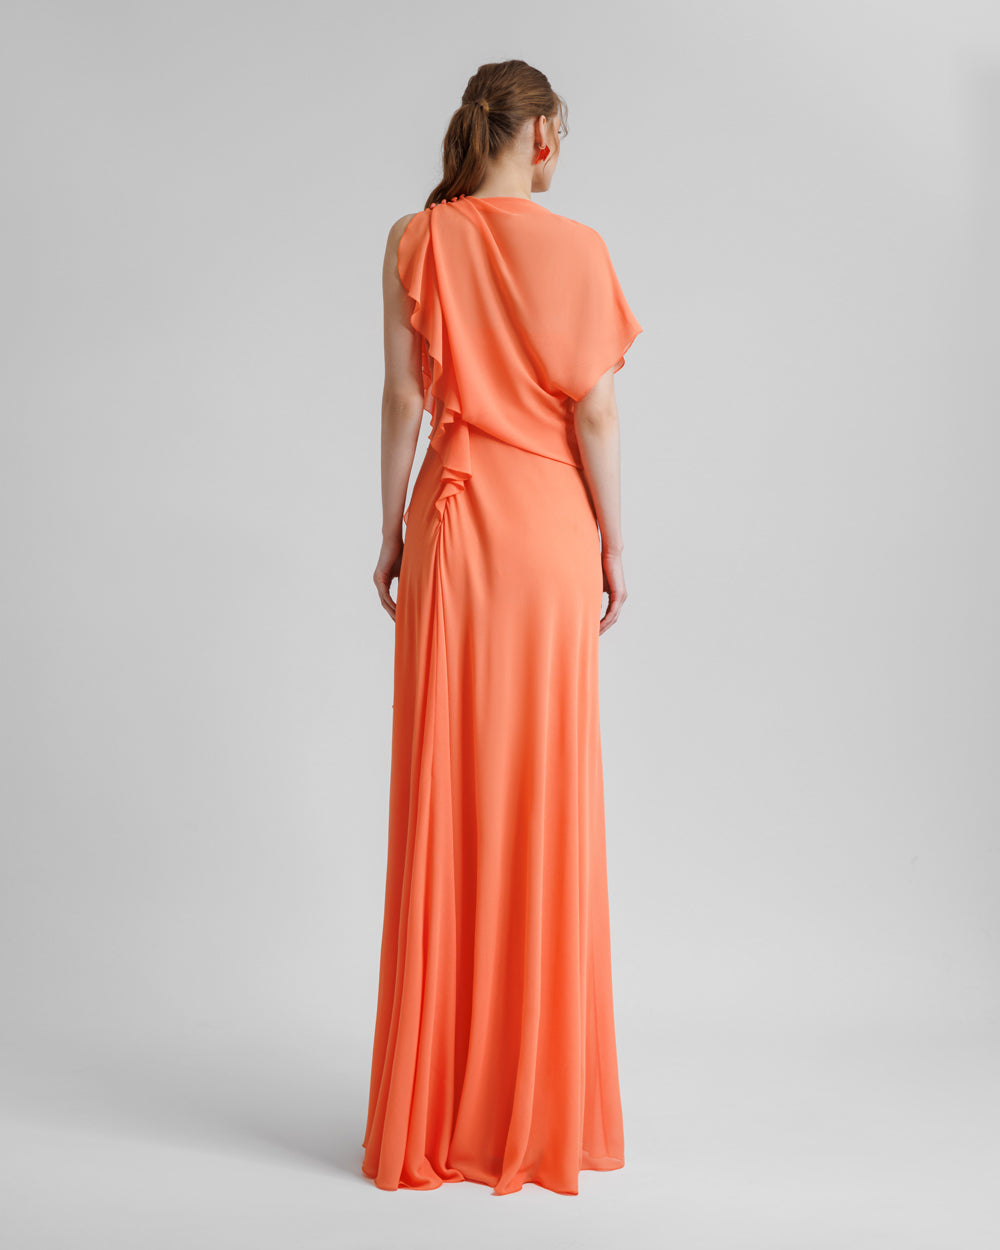 Draped Orange Chiffon Dress